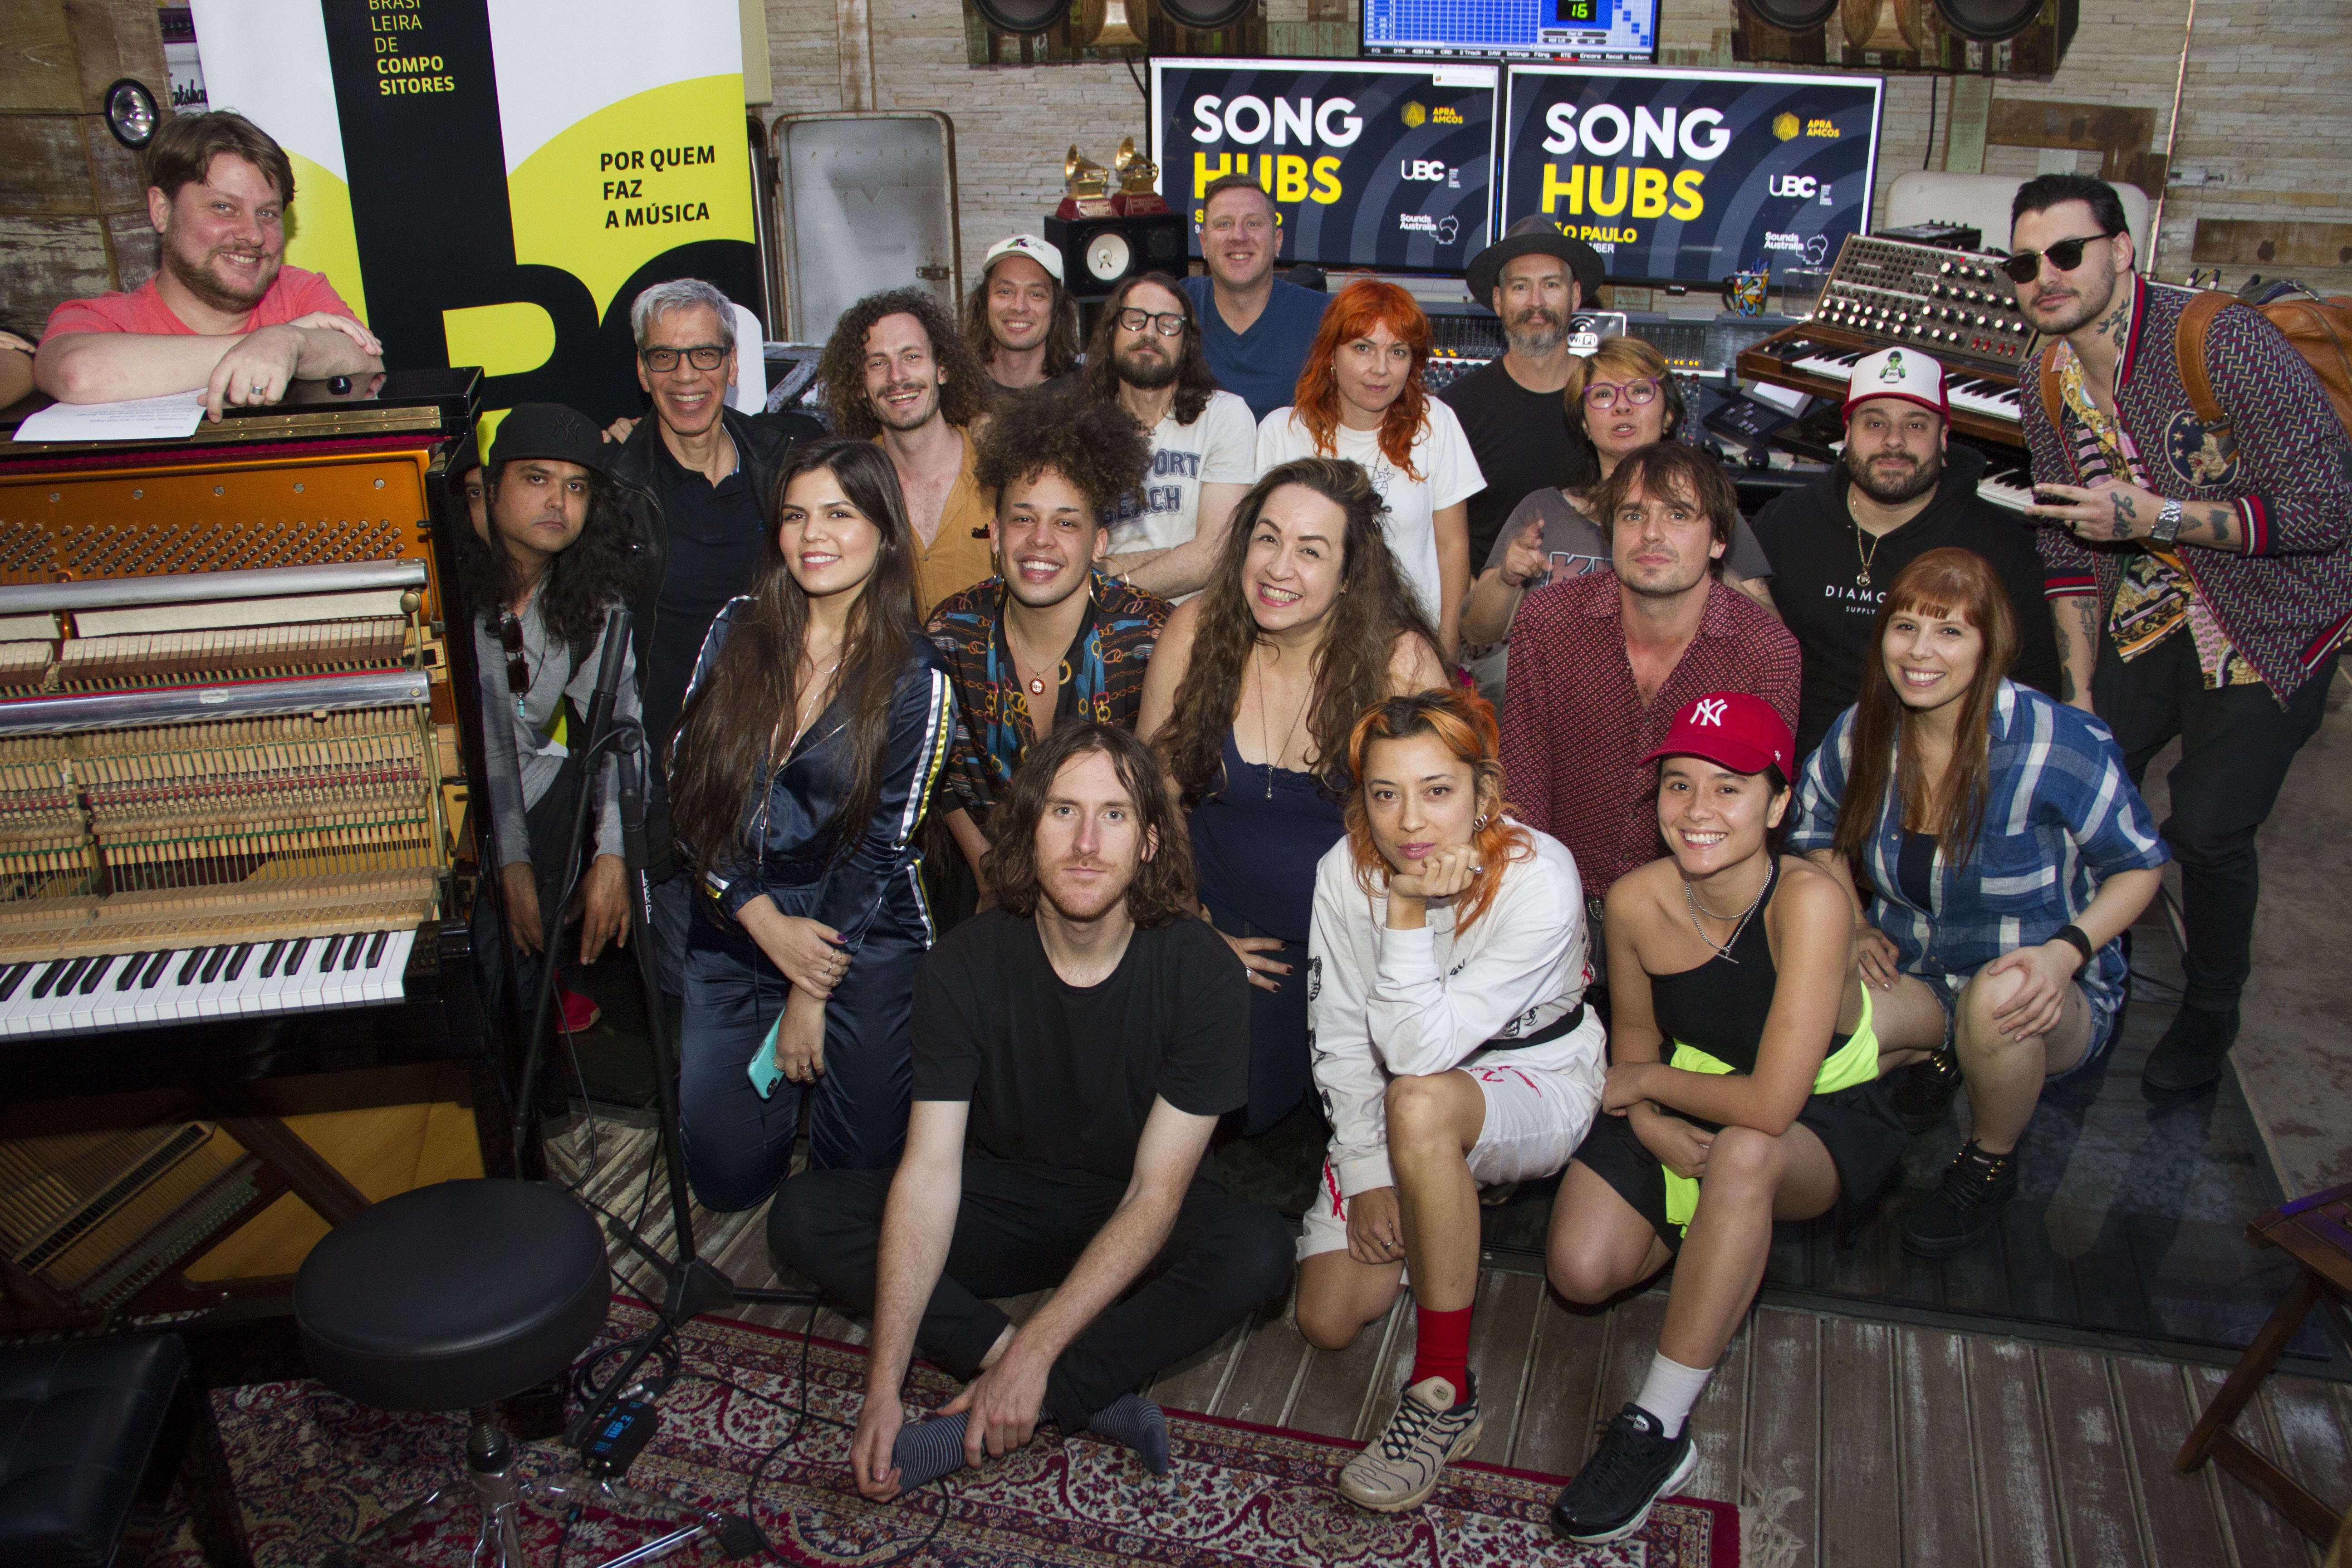 SongHubs gets started in São Paulo